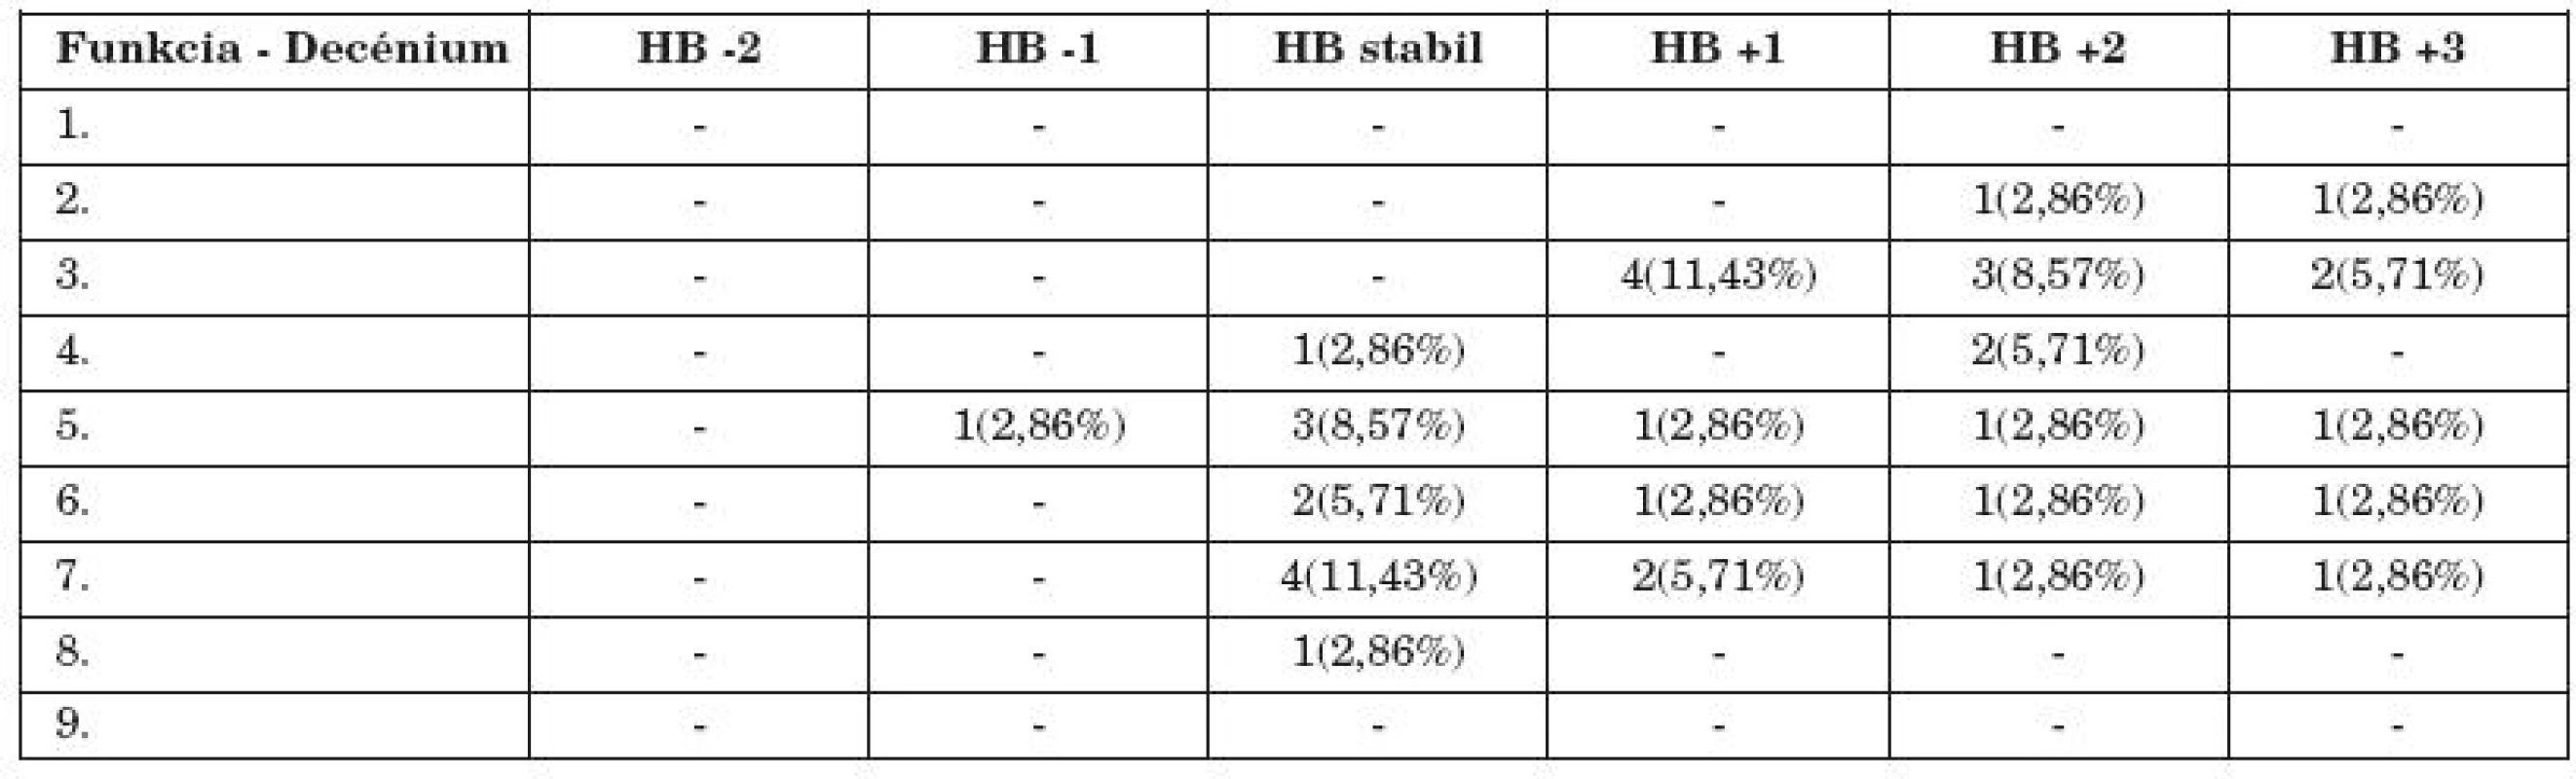 Zmena funkcie n. VII počas hospitalizácie v HB klasifikácii podľa decénií (35 pacientov).